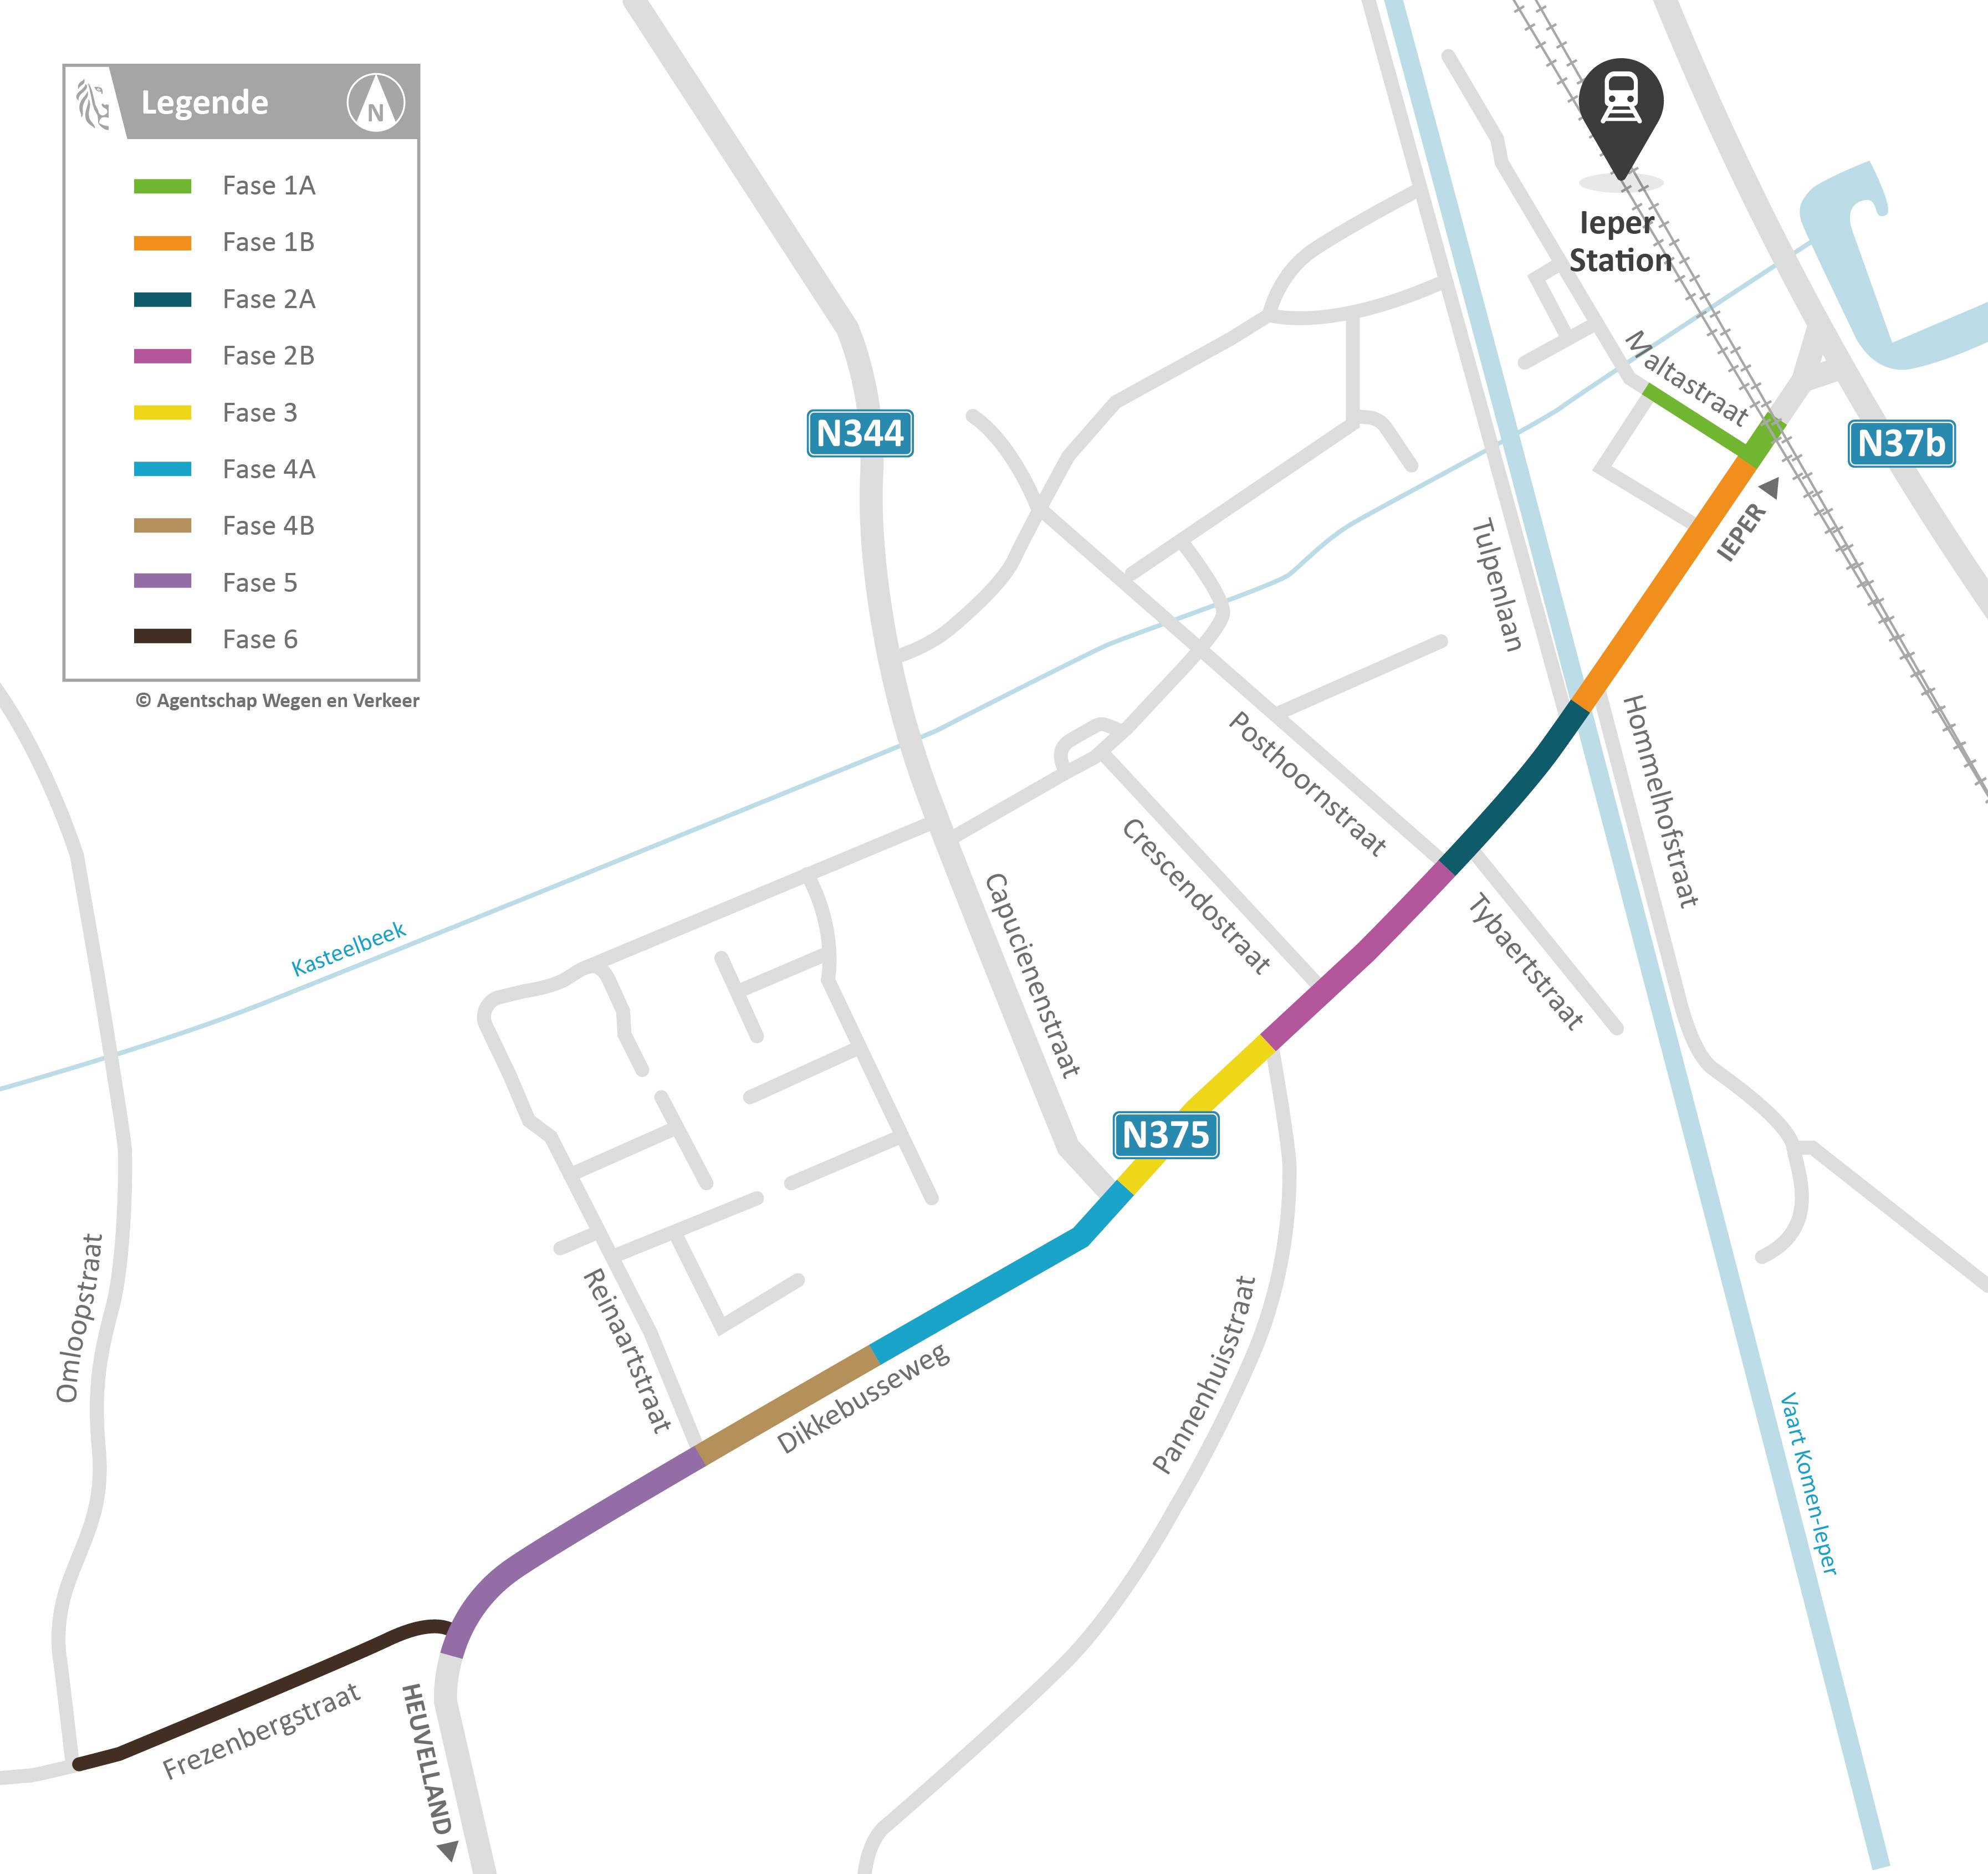 Dikkebusseweg (N375) in Ieper - faseringskaart